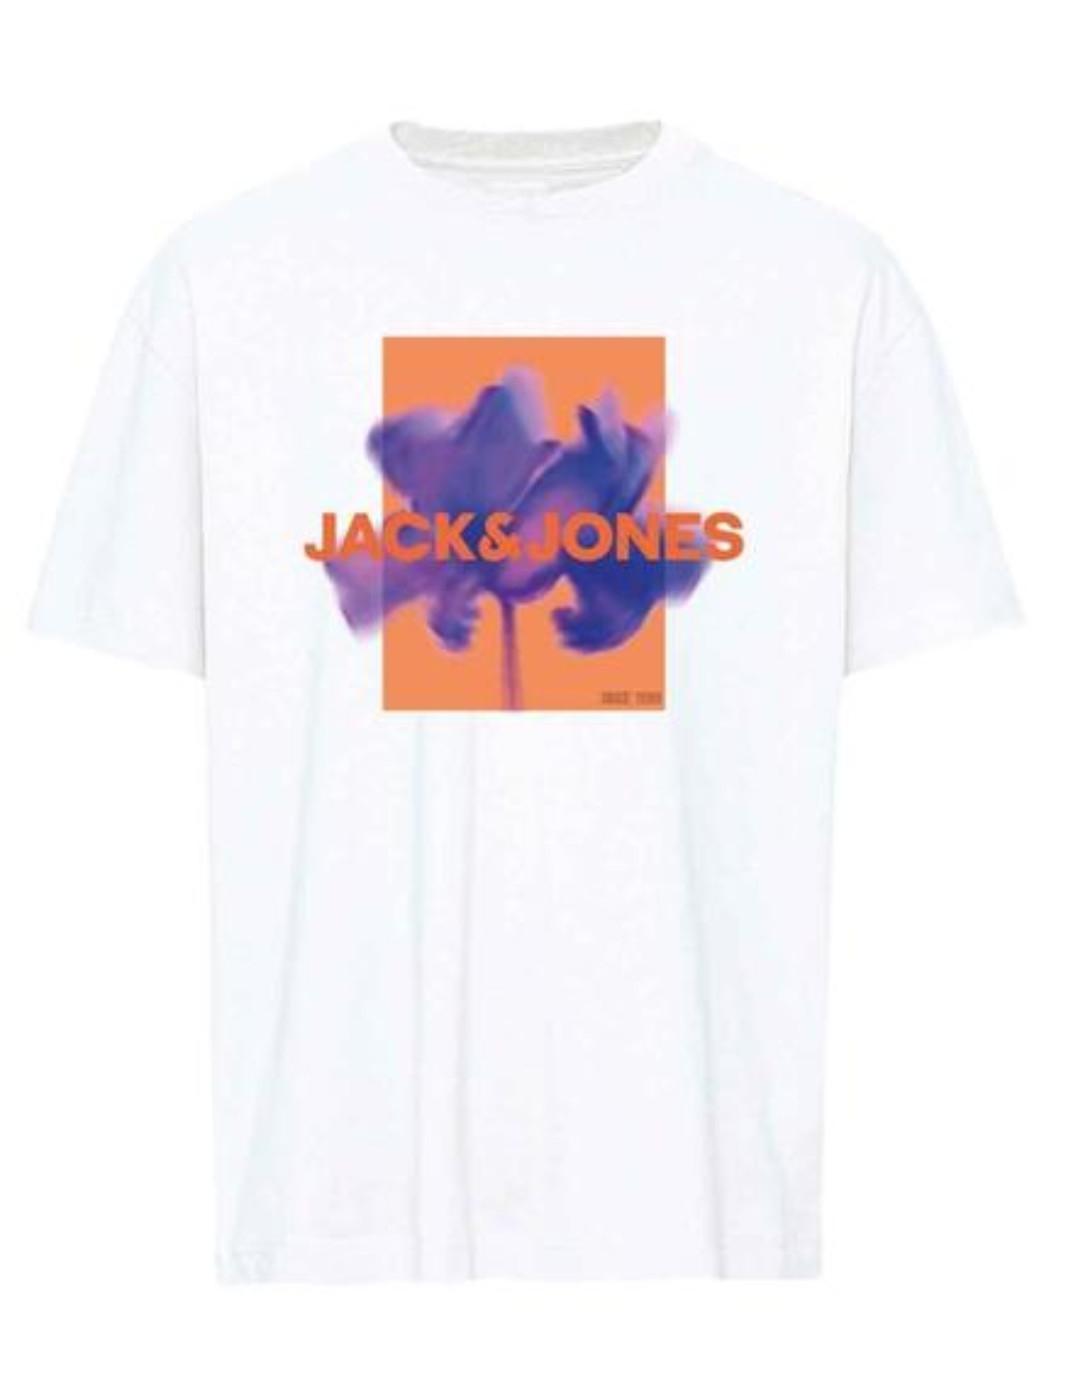 Camiseta Jack&Jones Junior Floral blanco manga corta de niño